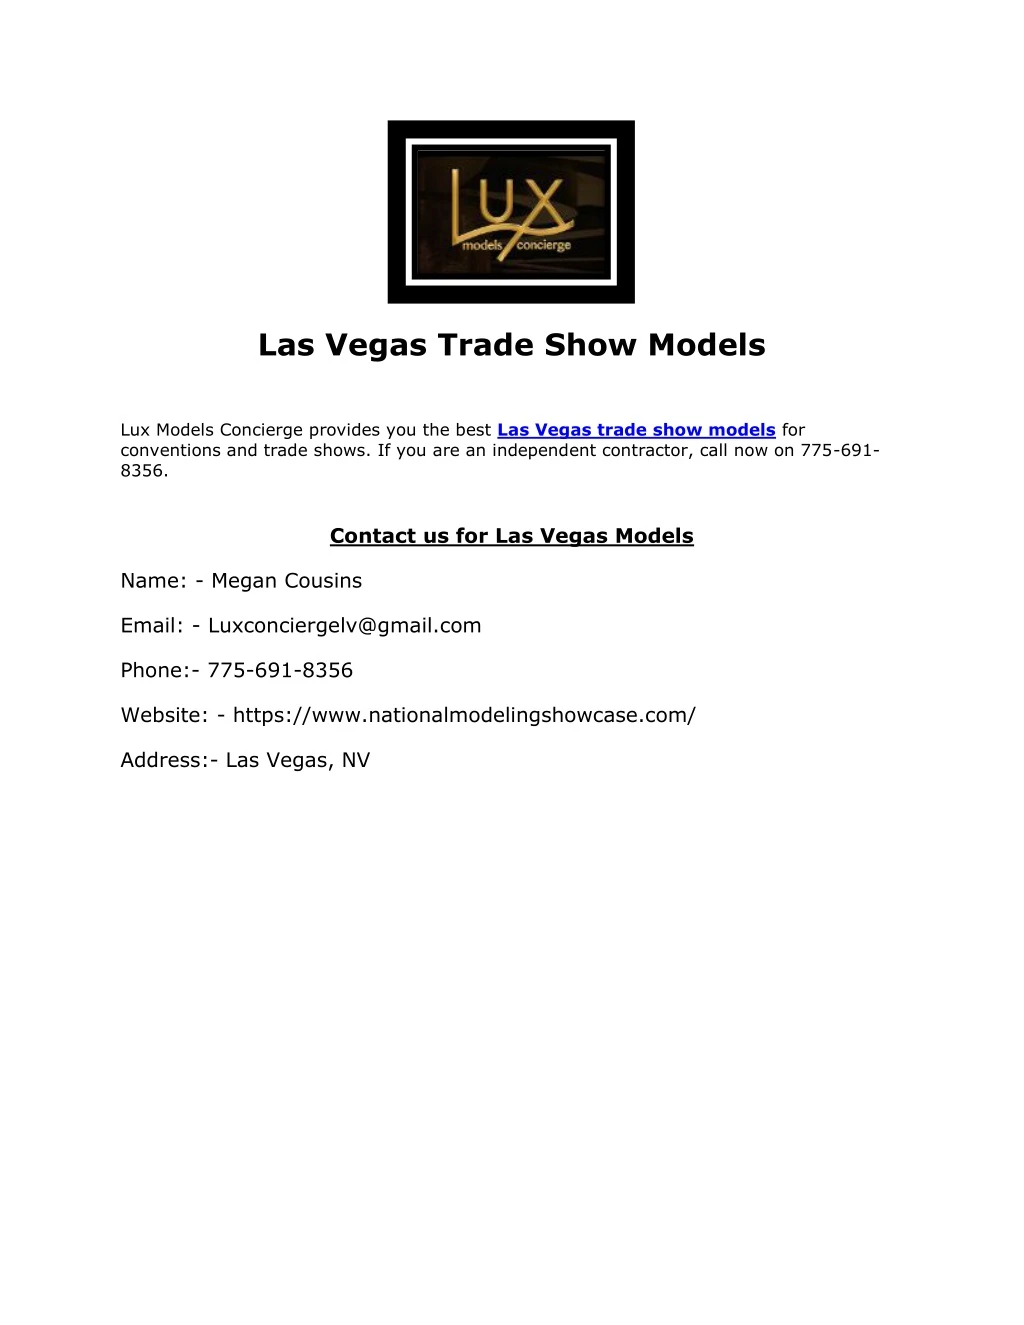 las vegas trade show models lux models concierge